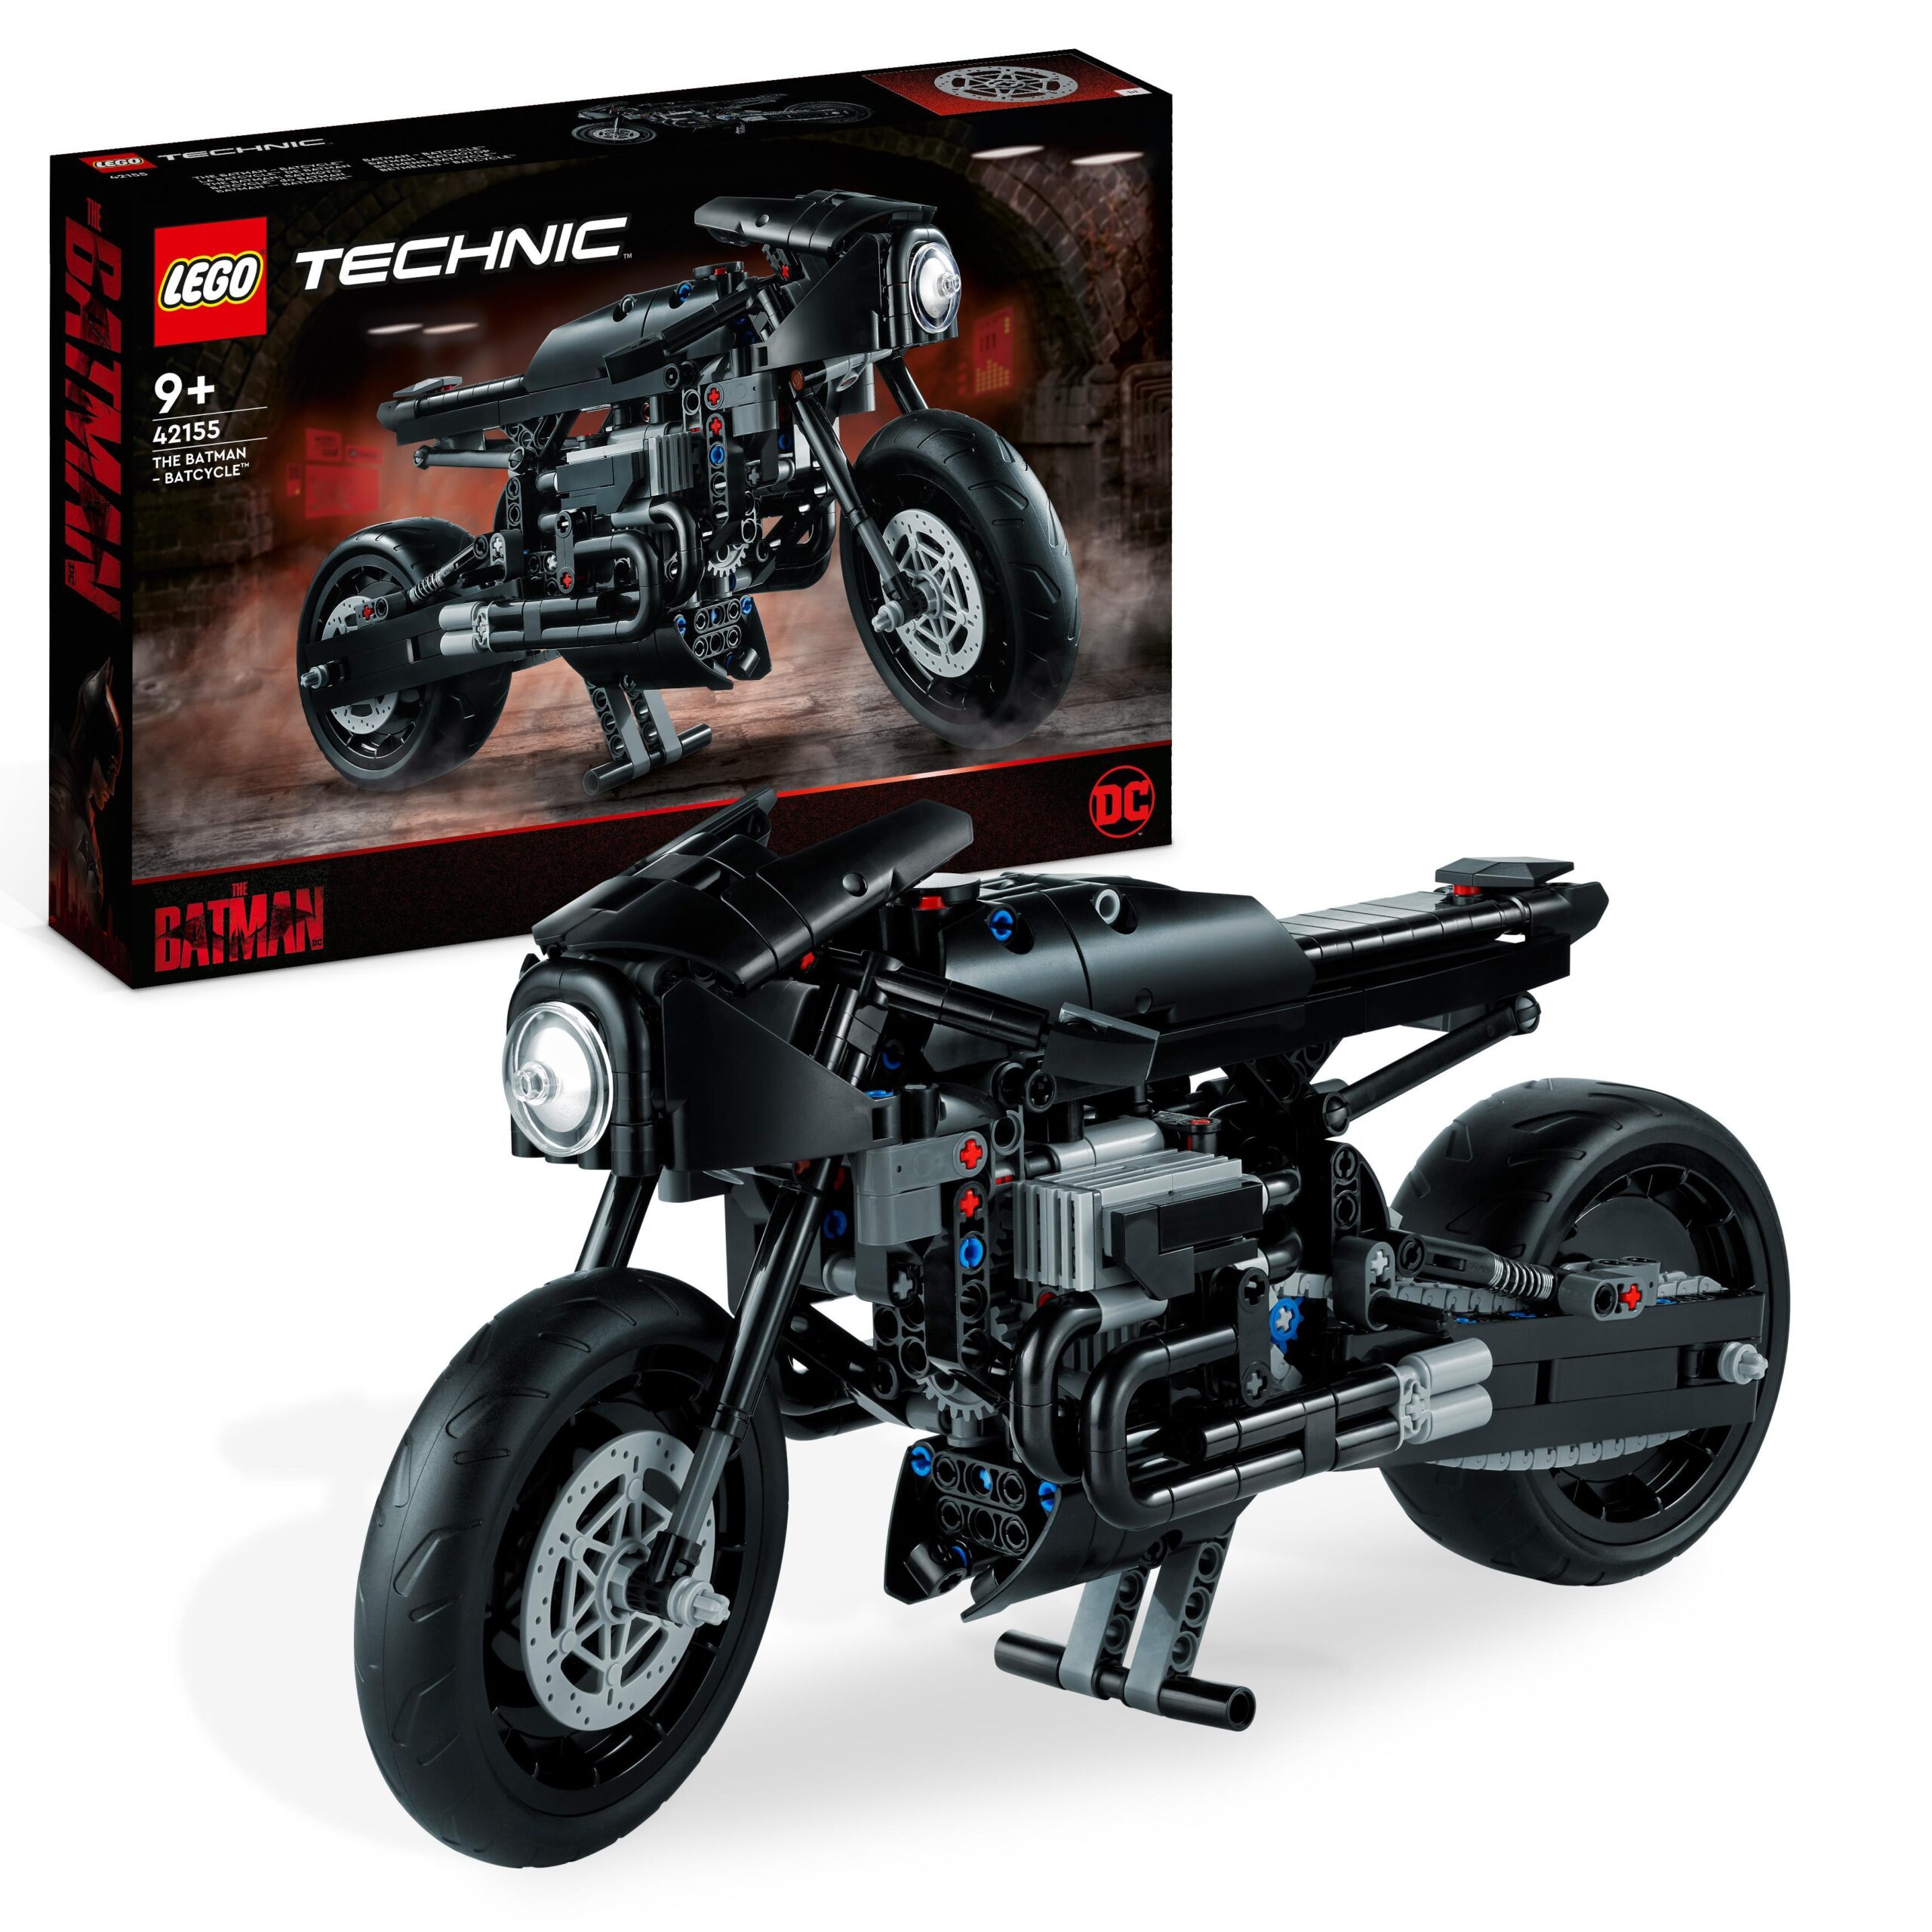 Lego technic 42155 the batman – batcycle, moto giocattolo da collezione,  modellino motocicletta del supereroe, film del 2022 - Toys Center